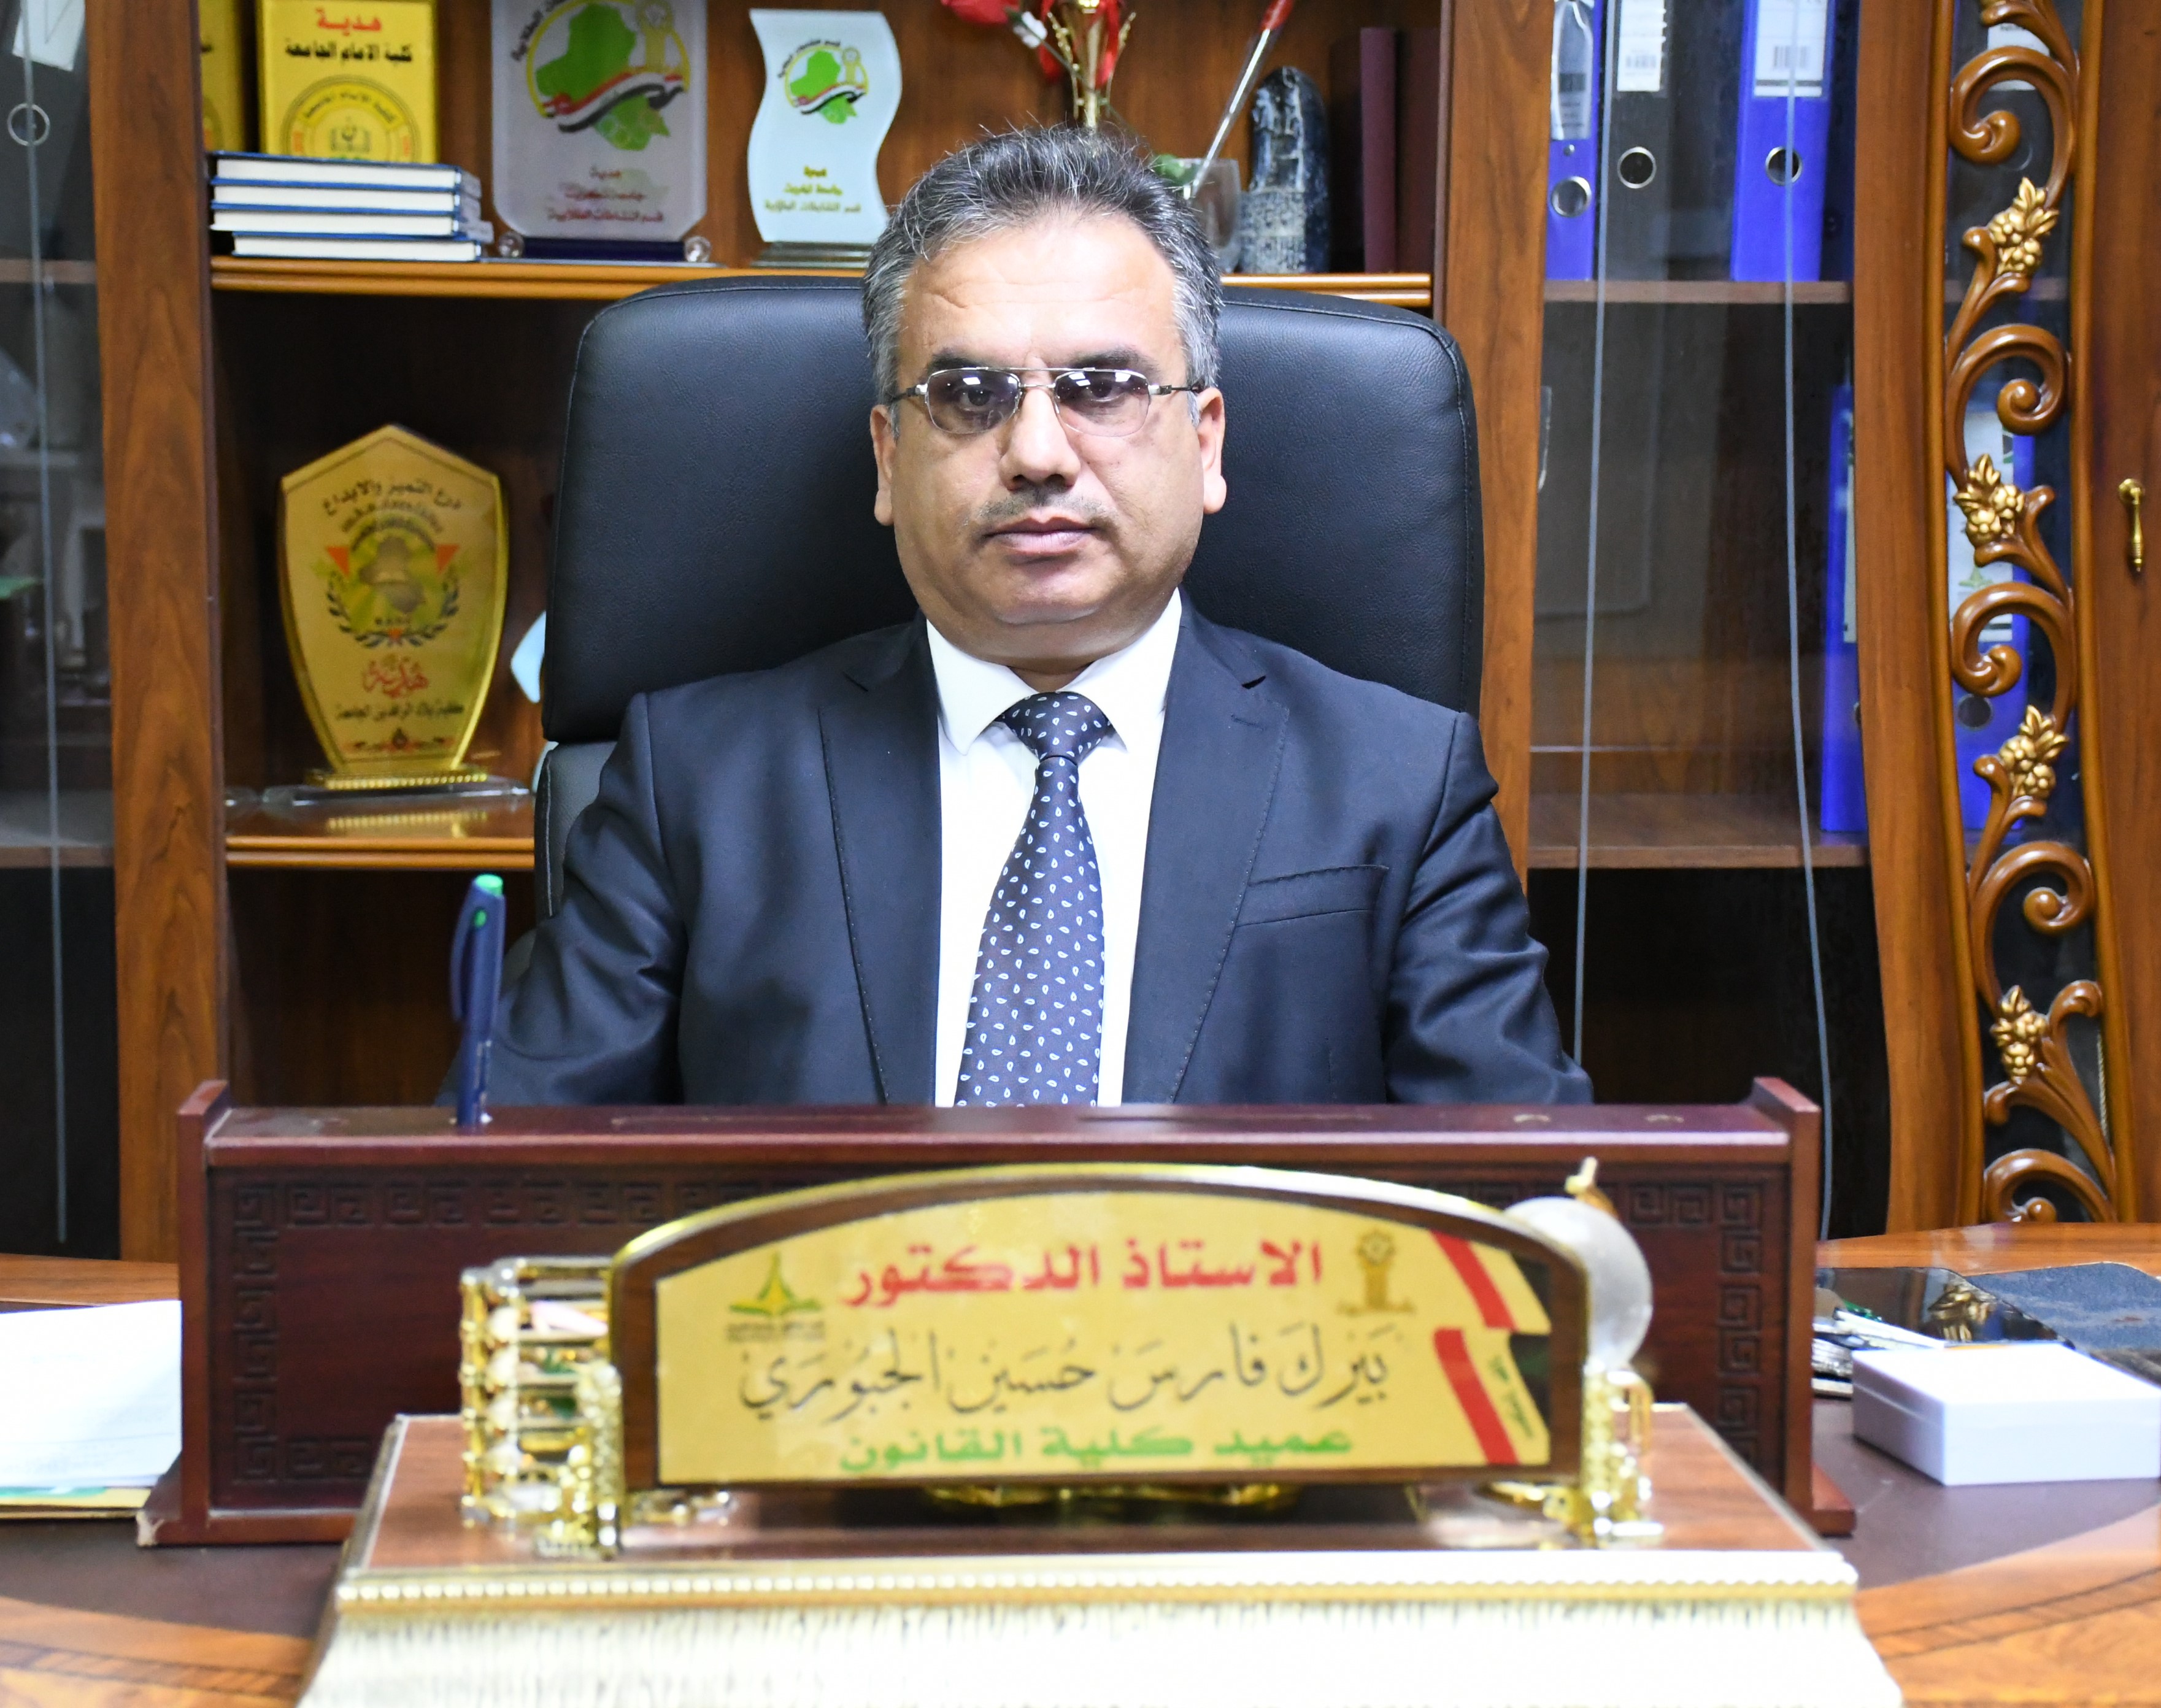 Prof. Dr. Bayrak Faris Hussein